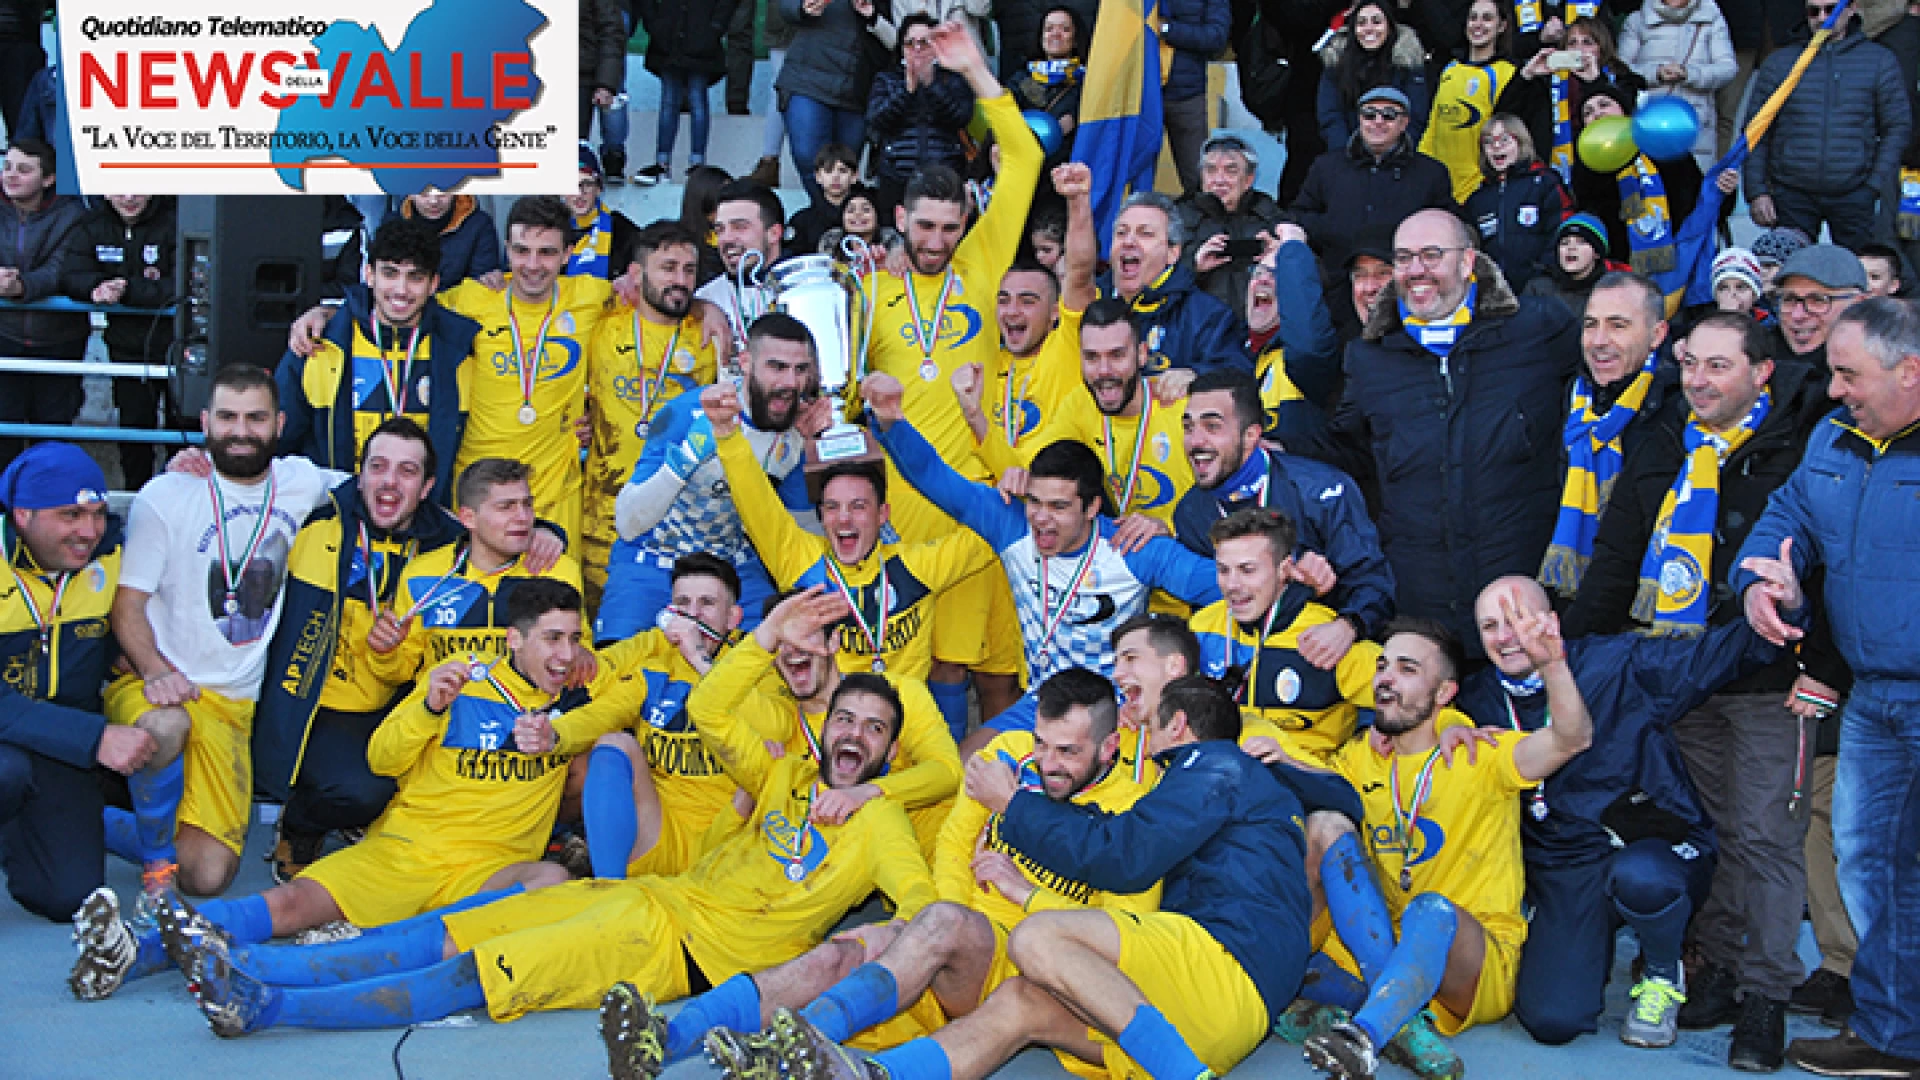 Calcio regionale: la Coppa Italia è del Vastogirardi. Grazie ad una rete di Cipriano il trofeo torna in alto Molise. Terza finale consecutiva per la squadra del presidente Di Lucente.